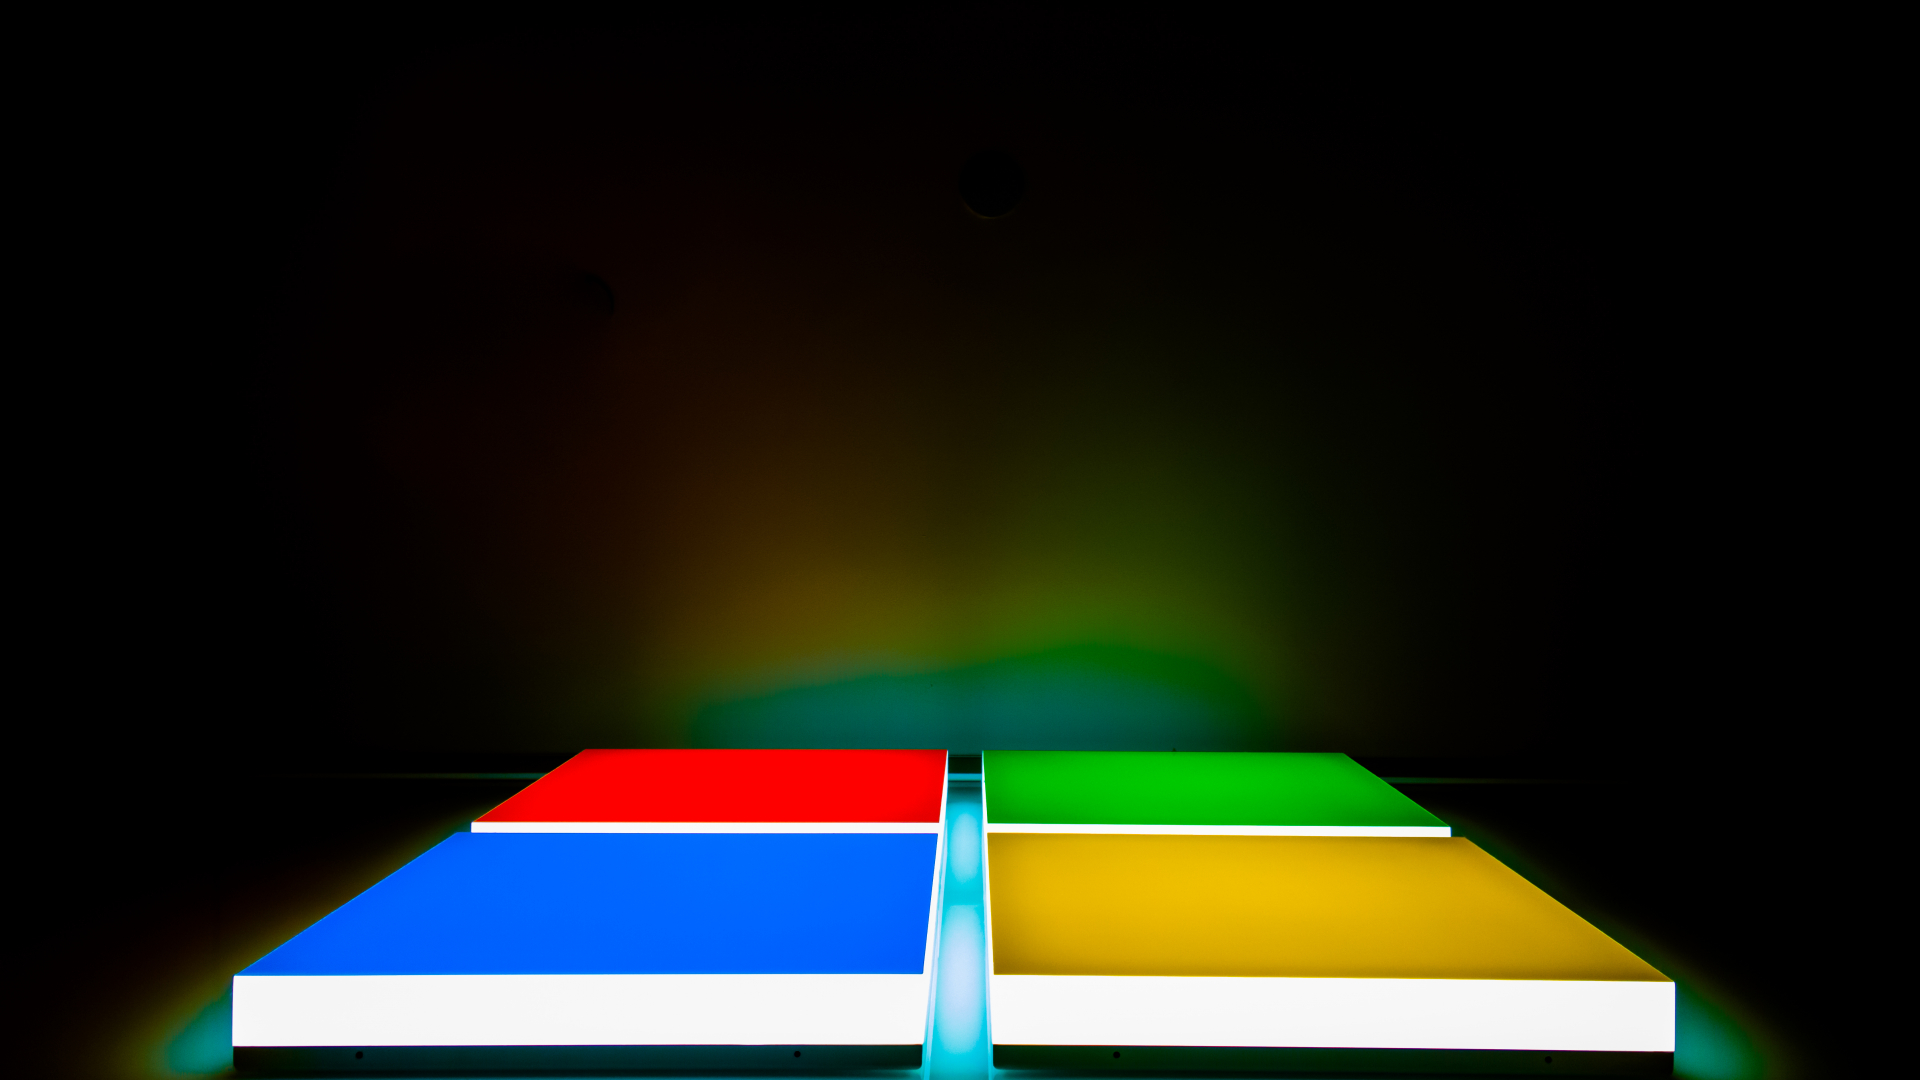 عکس زمینه شیک از مکعب های مربعی در چهار رنگ قشنگ و دیدنی